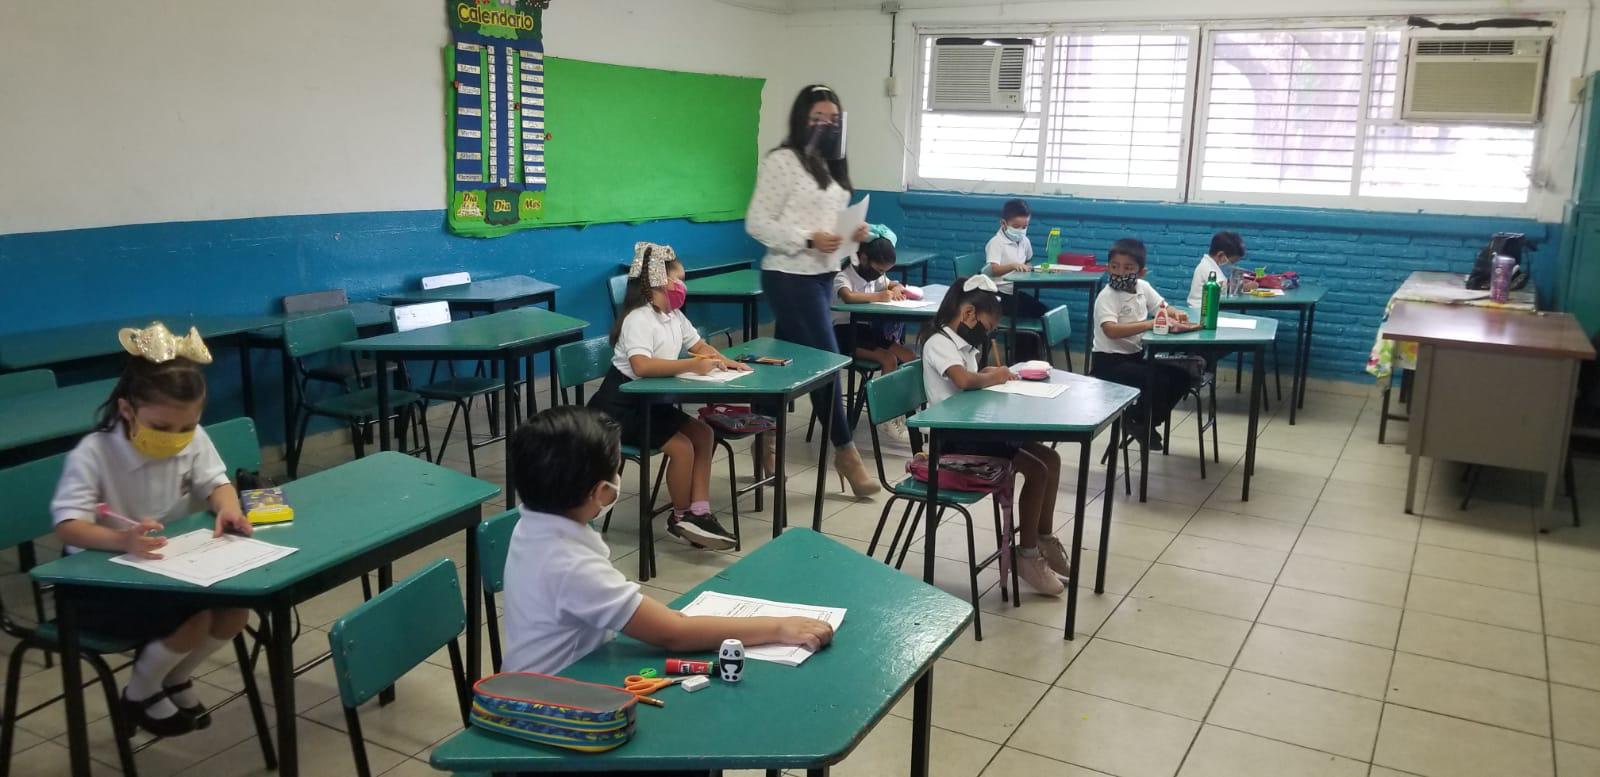 $!Se anuncian clases presenciales, pero en Culiacán las escuelas no se activan y siguen en modo virtual